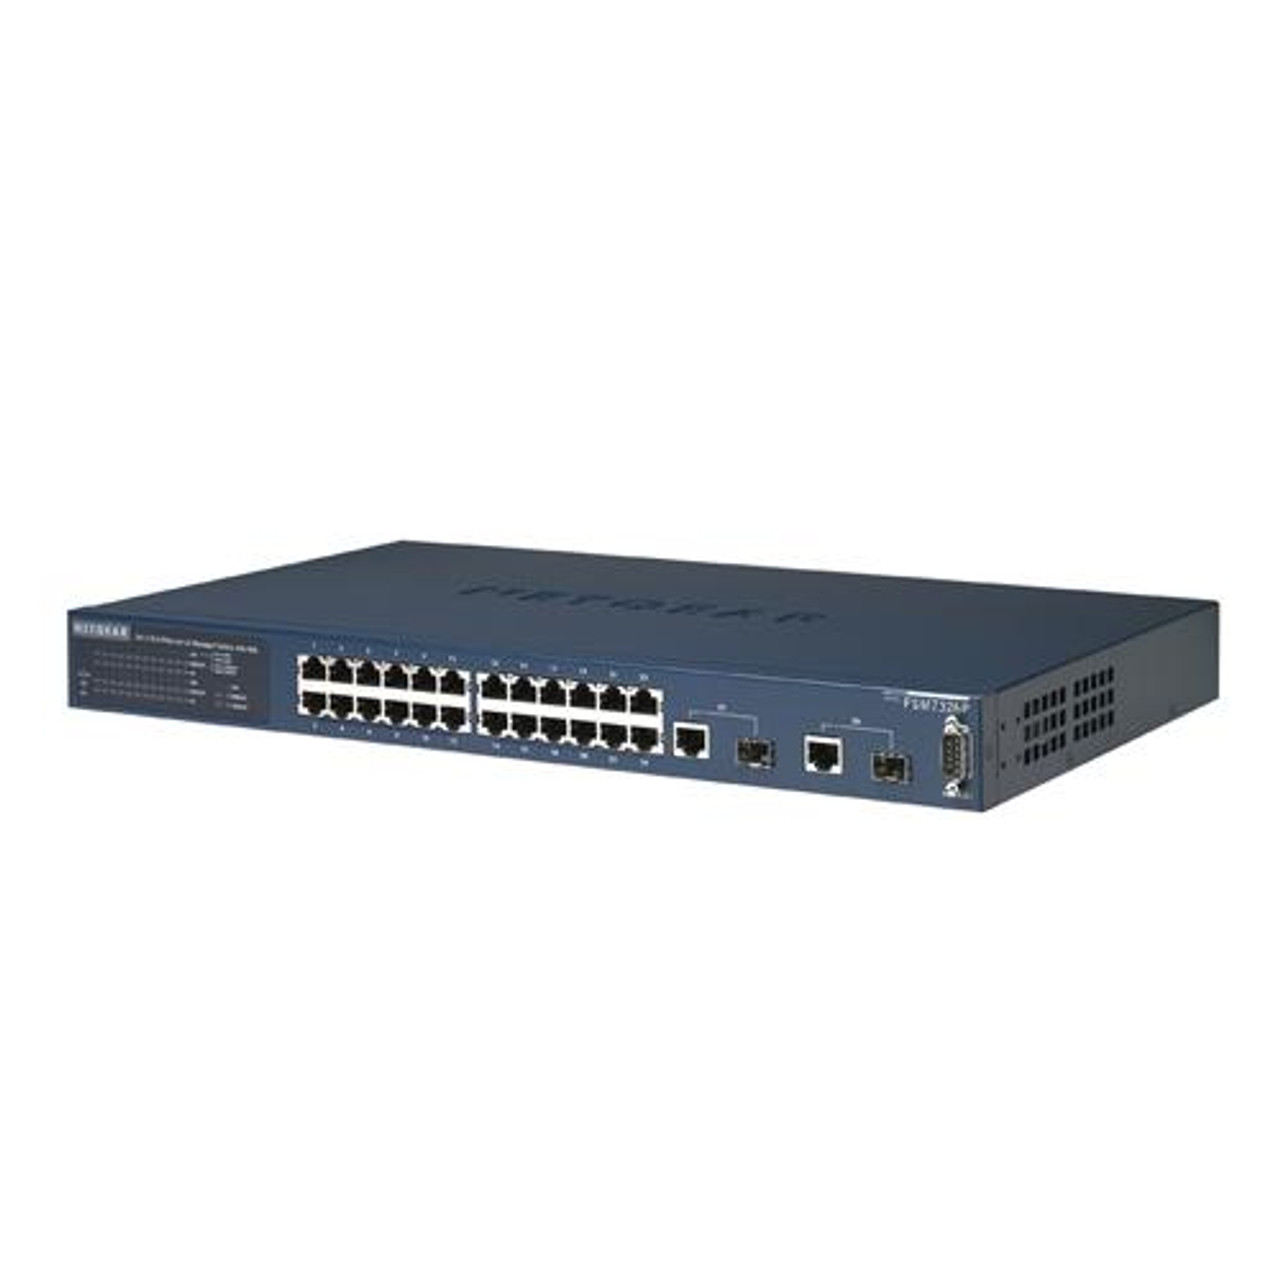 FSM7326P NetGear ProSafe 24-Ports 10/100Mbps Level 3 Managed Switch with 2 Gigabit Ports (Refurbished)